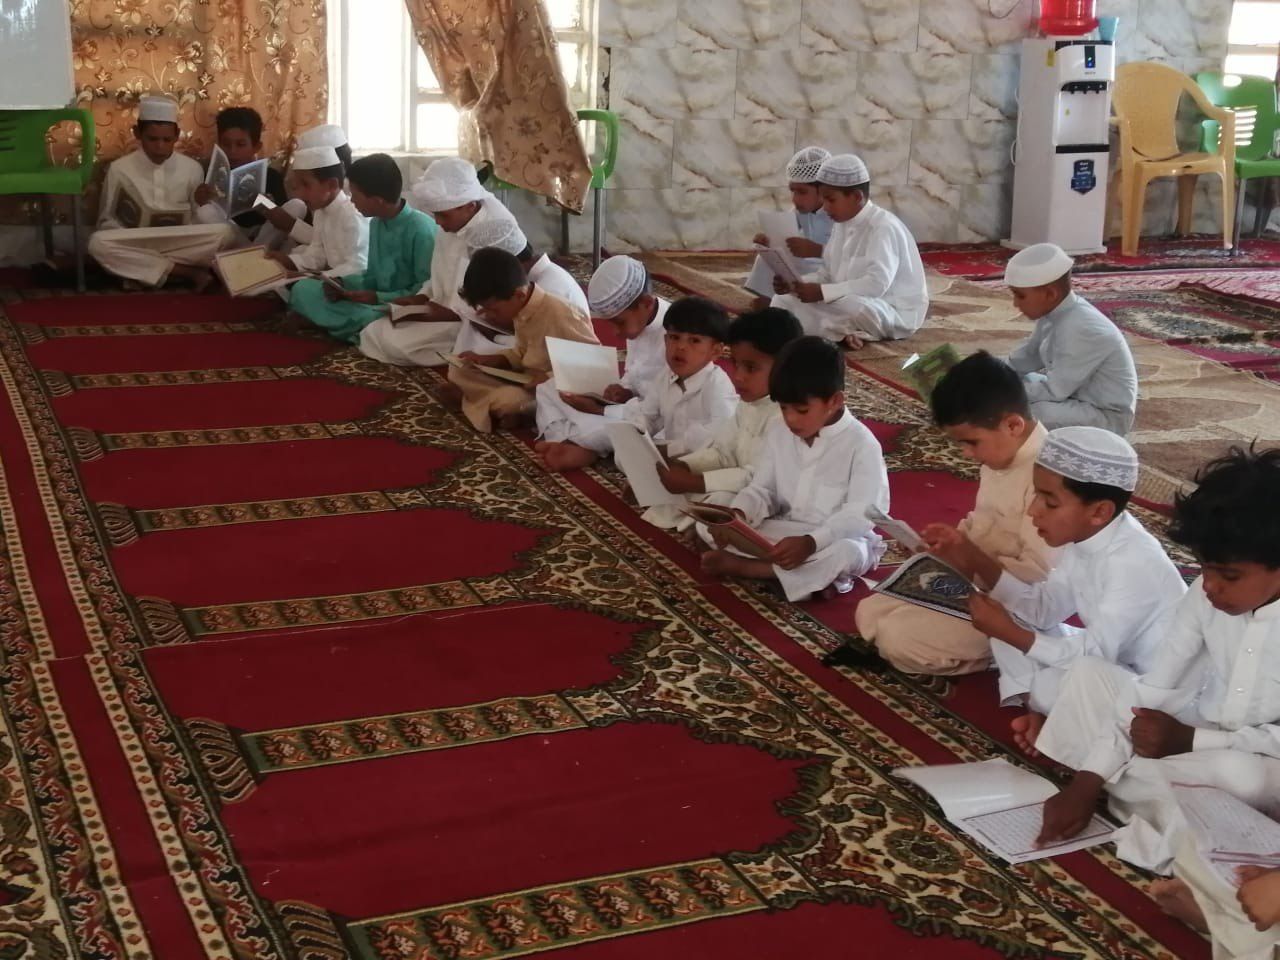 أكثر من ١٣٠٠ طالب في المثنى يشاركون في مشروع الدورات القرآنية الصيفية